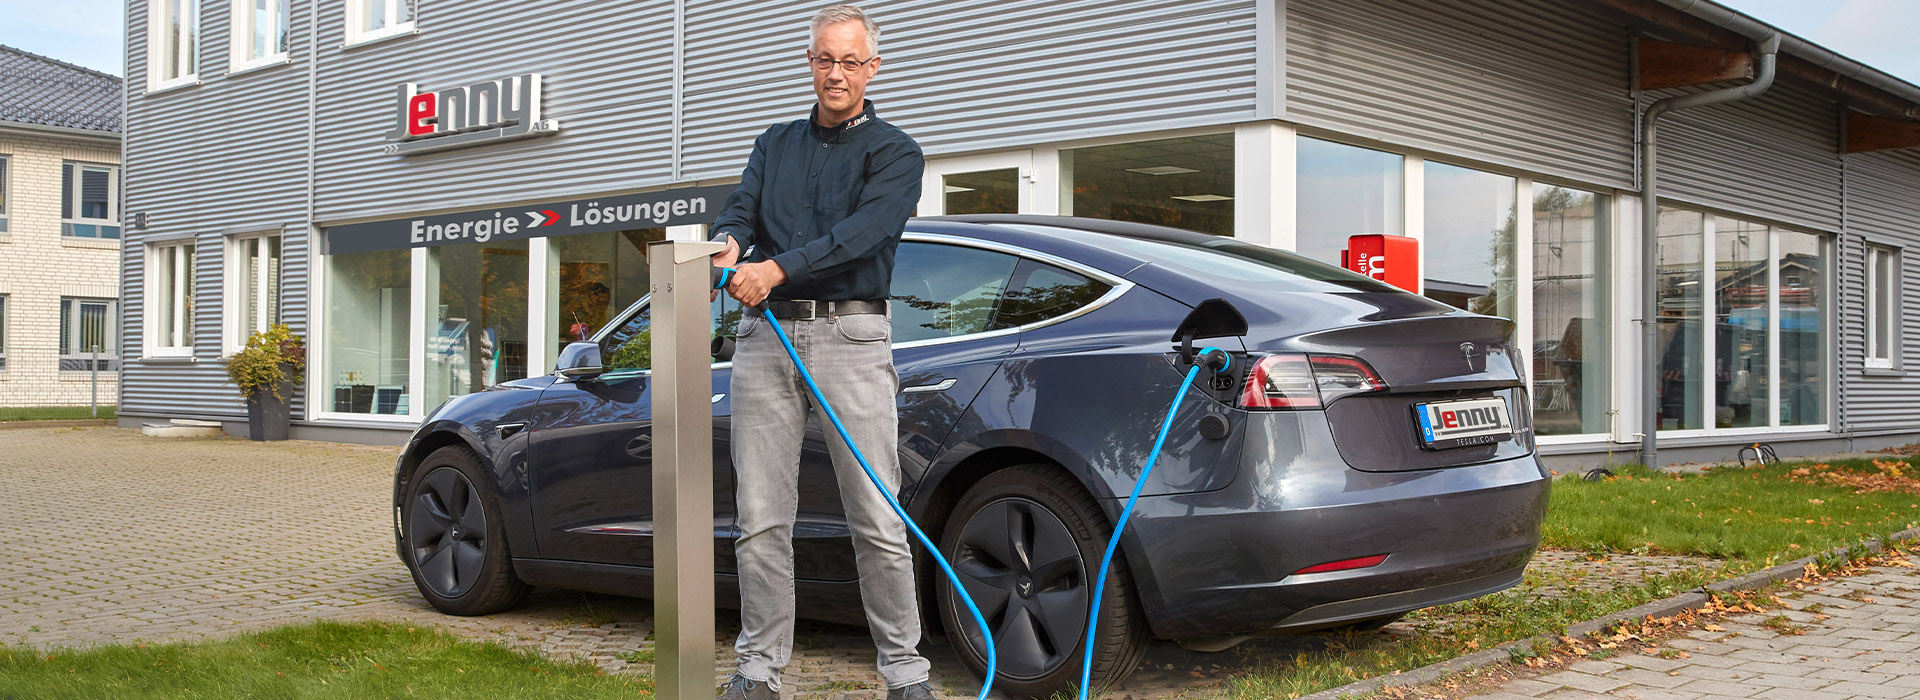 Energielösungen: ein Elektroauto wird an einer Ladesäule aufgeladen. E-Mobilität mit Sonnenstrom.